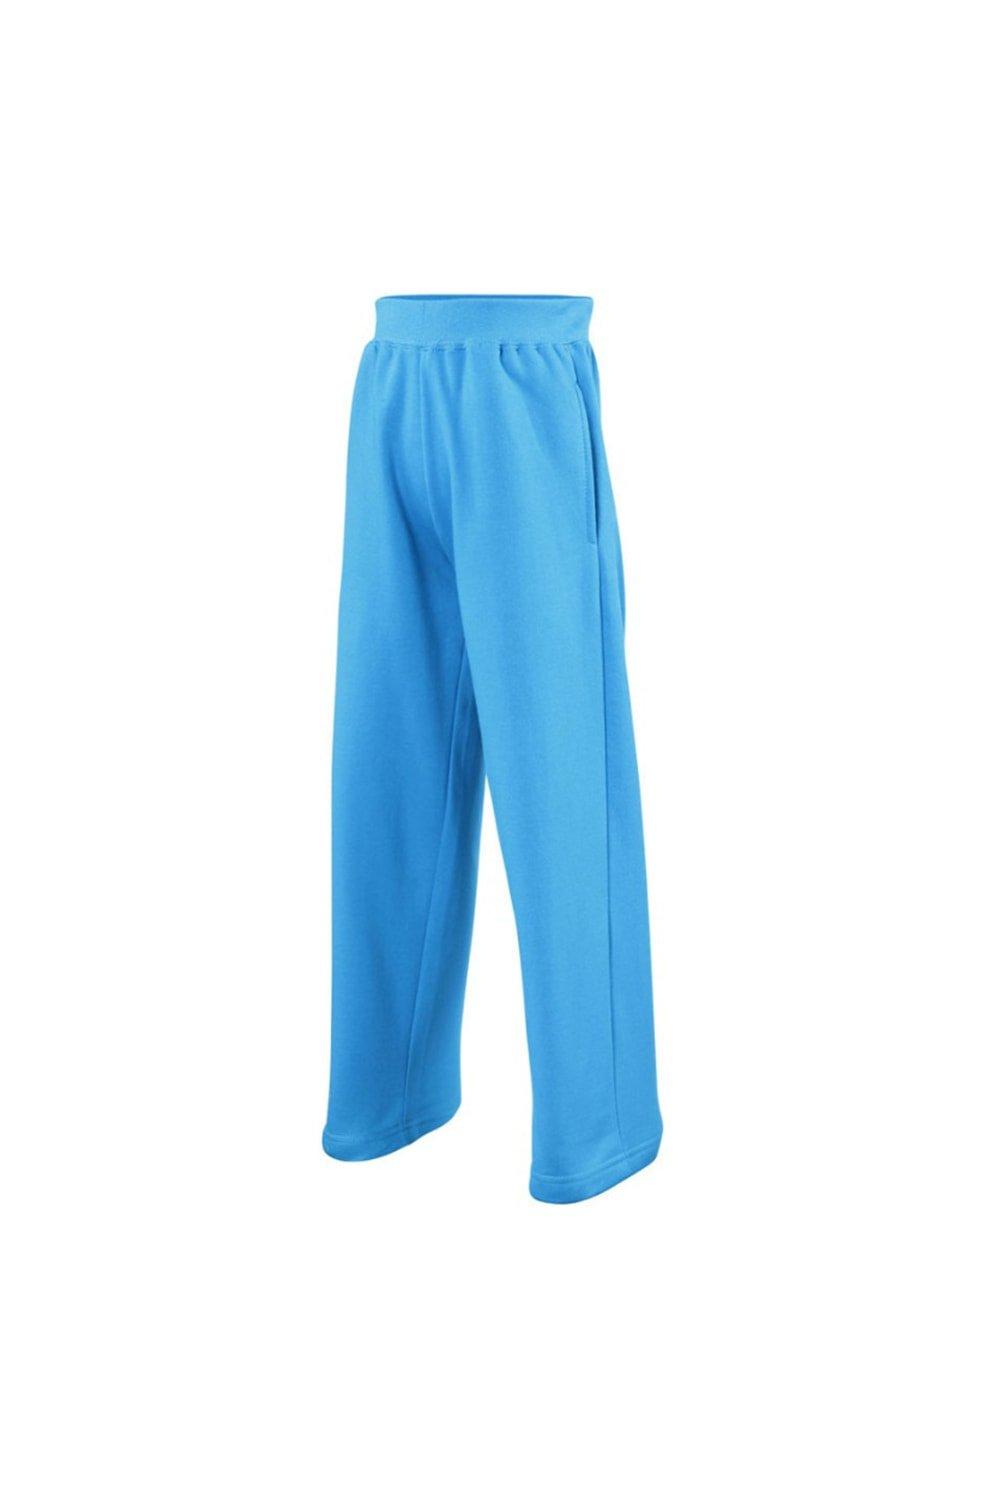 Брюки для бега/спортивные штаны AWDis, синий